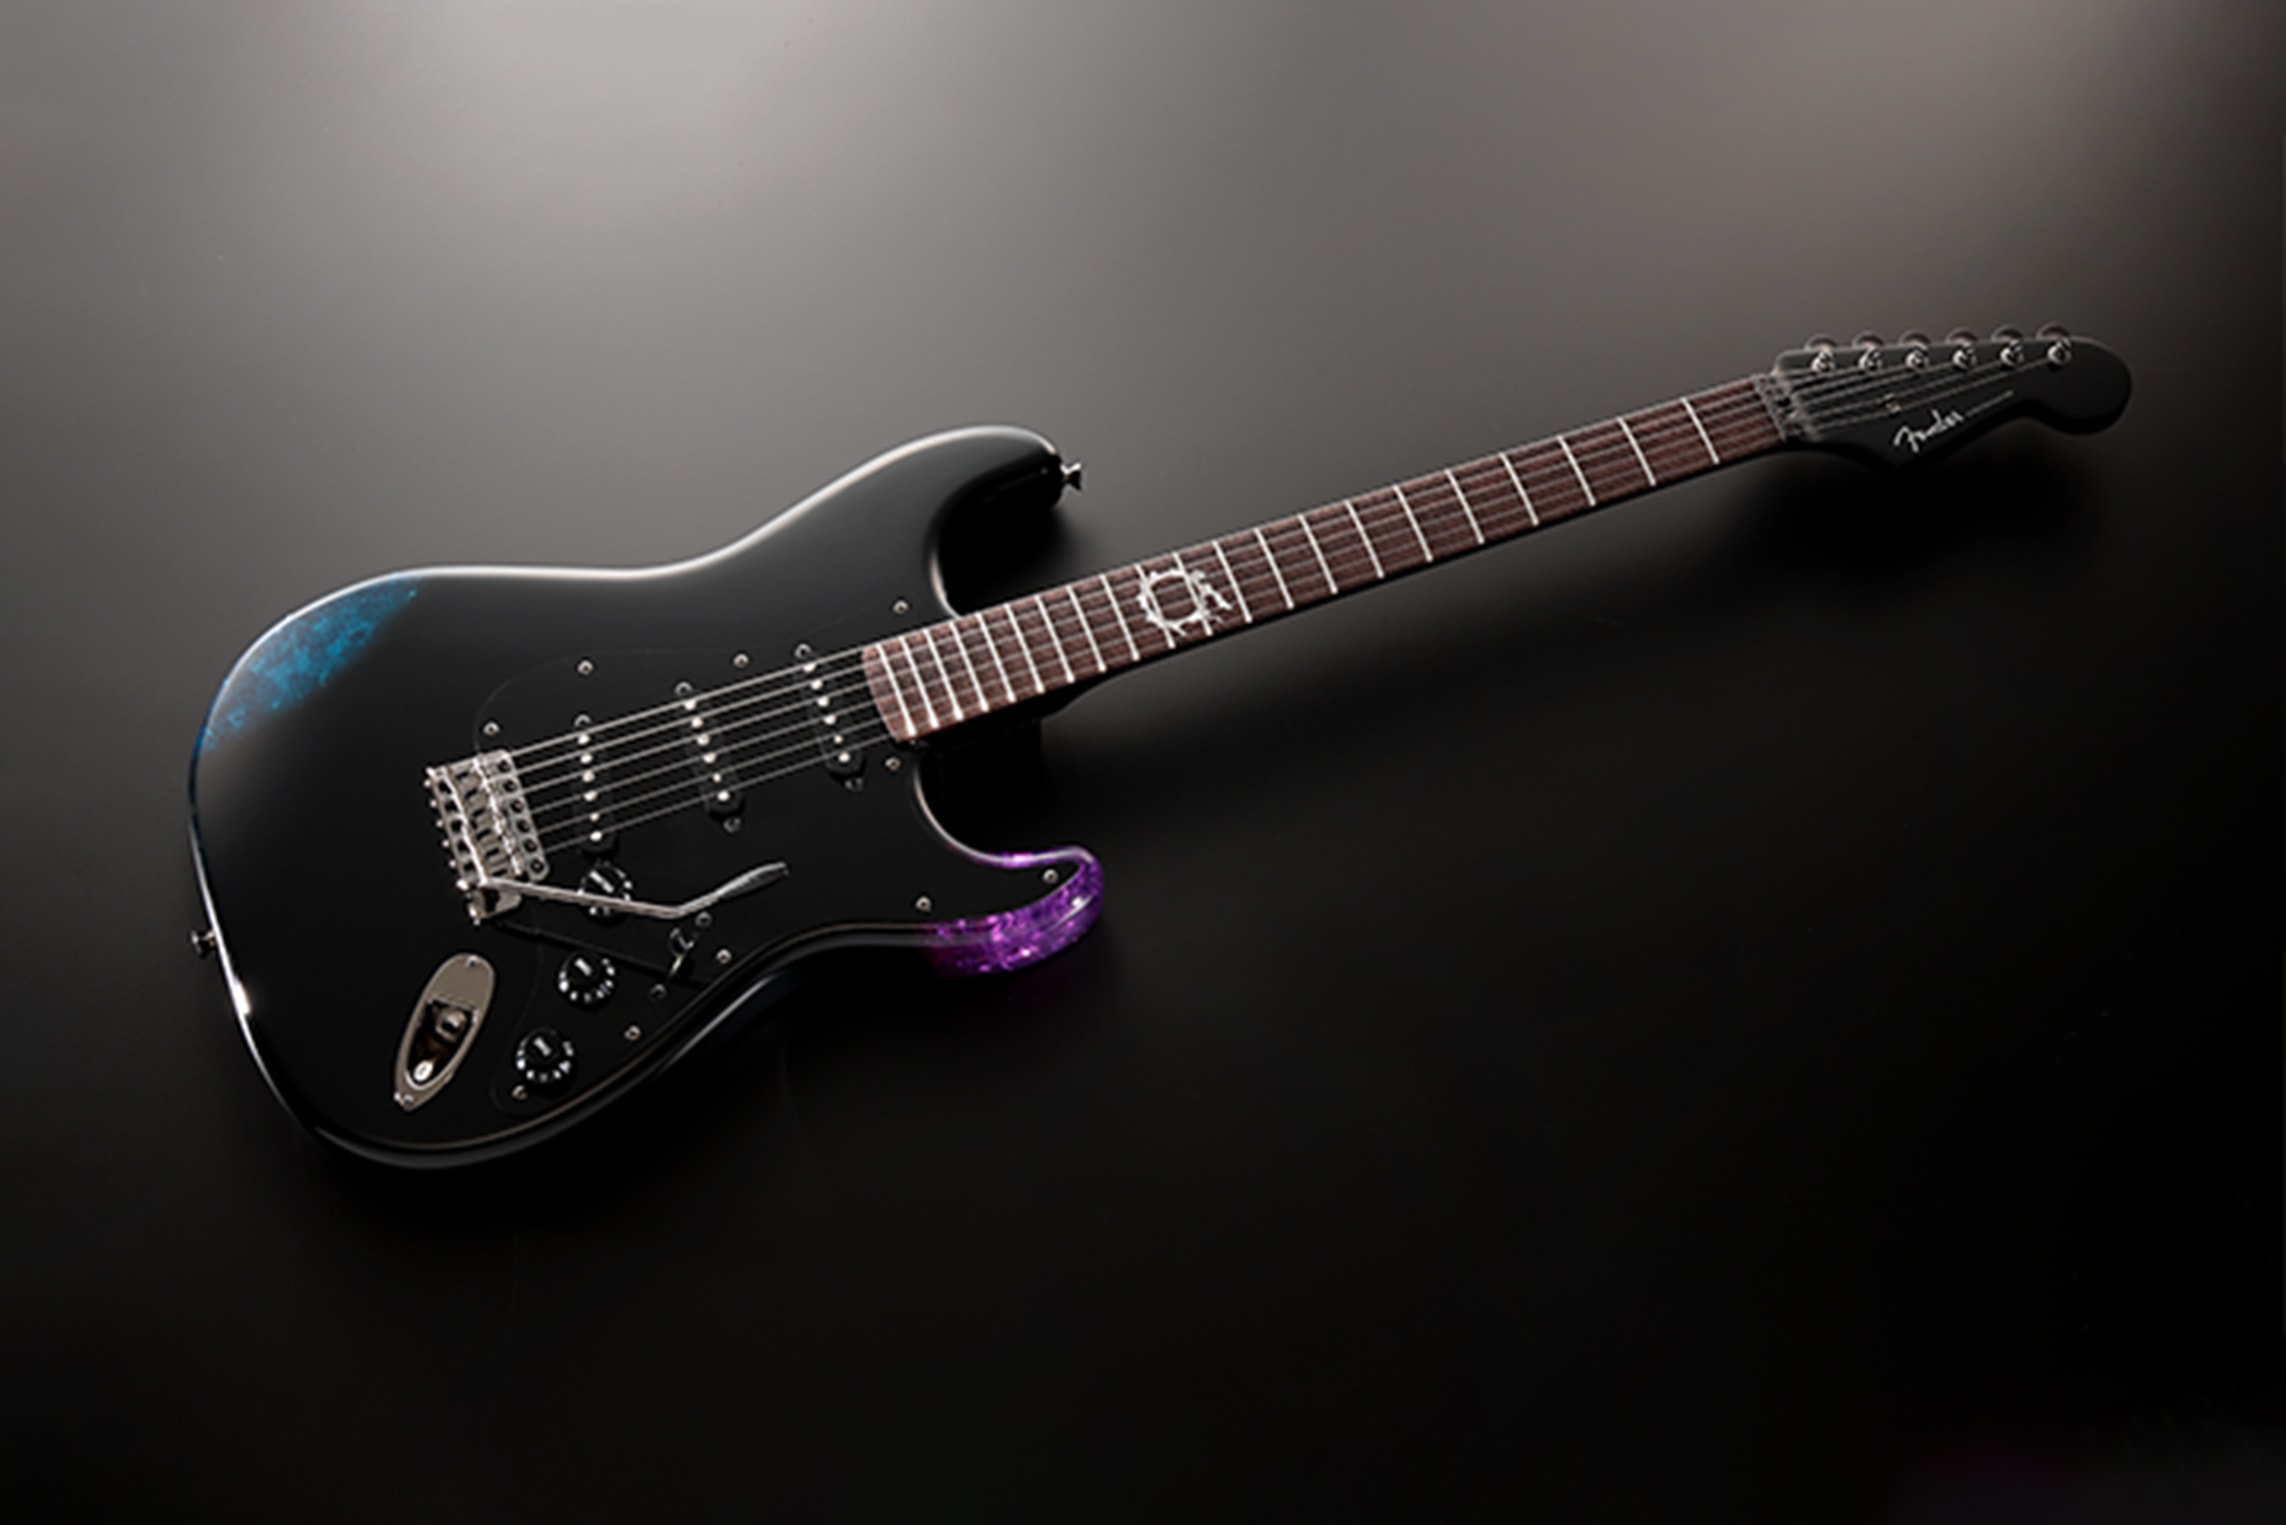 フェンダーが創立75周年を記念して『ファイナルファンタジー XIV』とのコラボギターを発売 Fender FINAL FANTASY XIV Stratocaster guitar release gaming Japan Bard Mode Gaming Fender Stratocaster